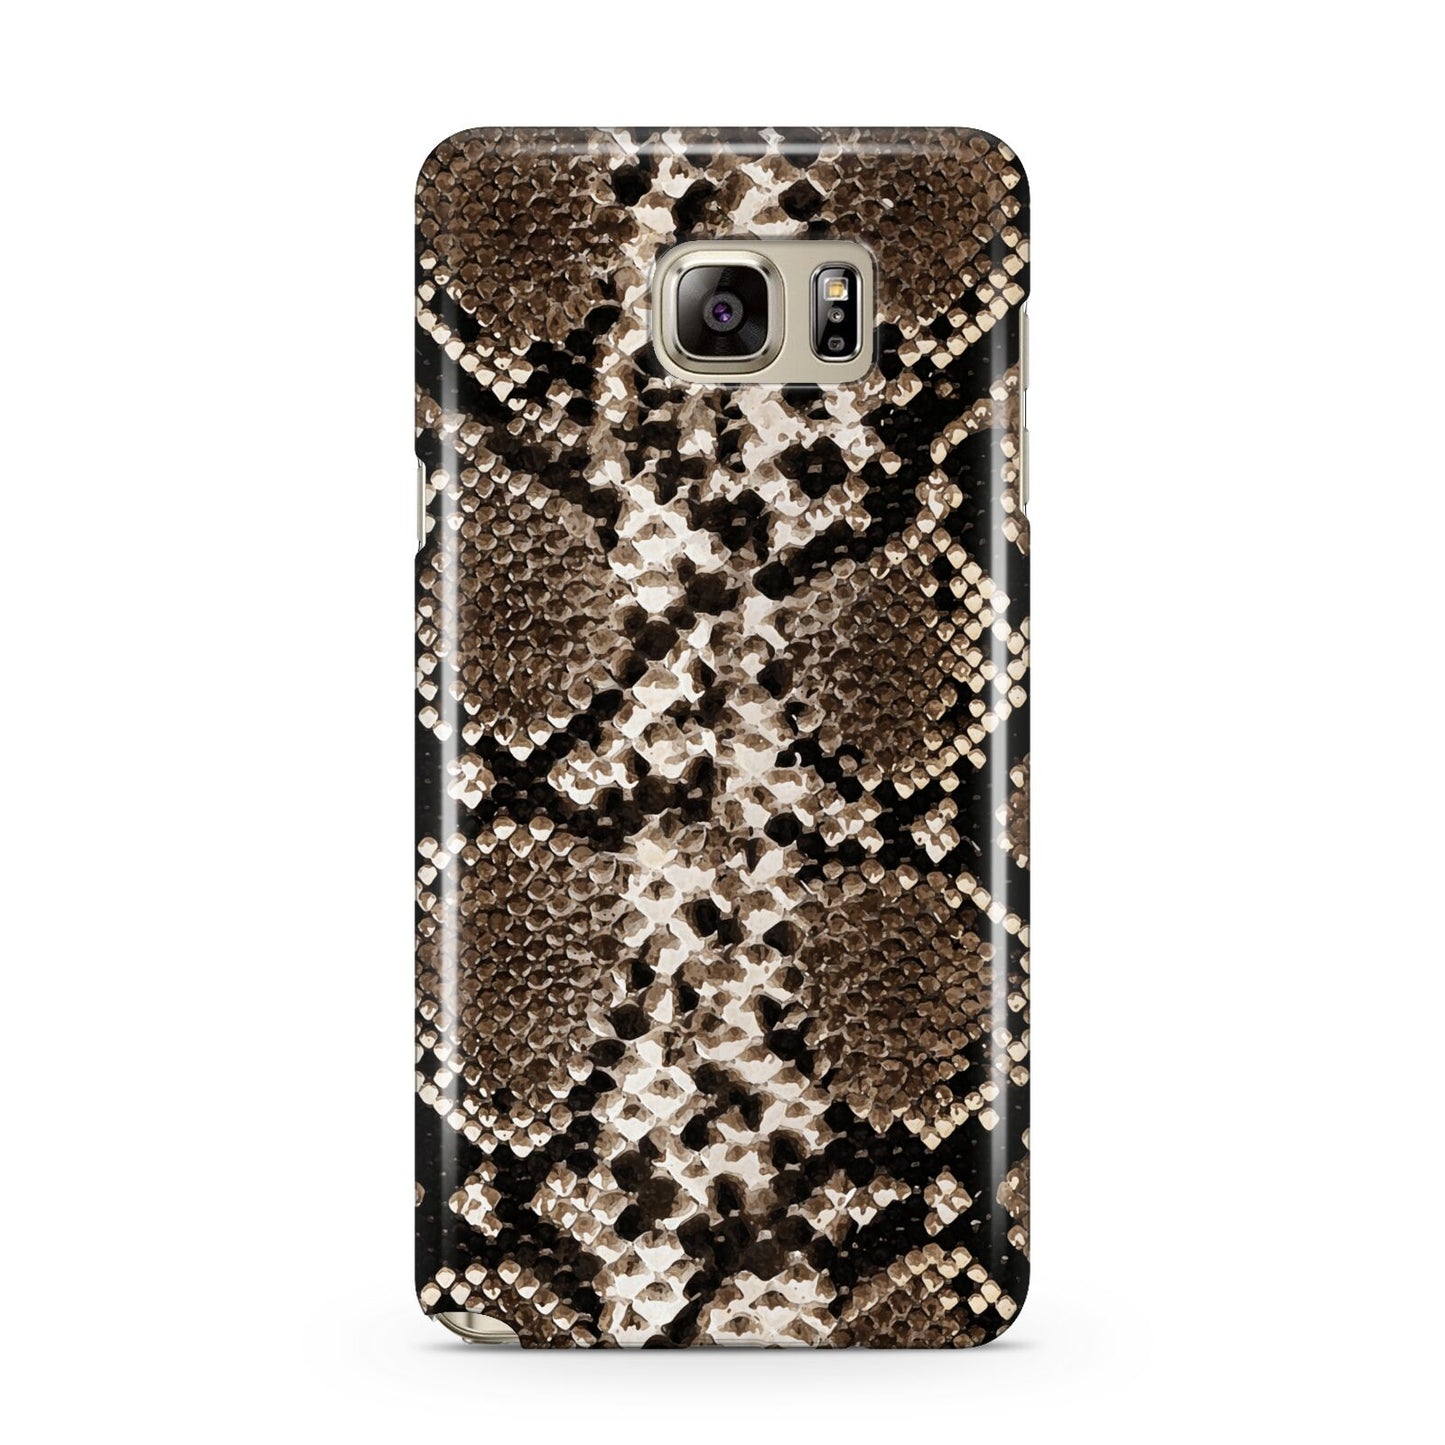 Snakeskin Pattern Samsung Galaxy Note 5 Case